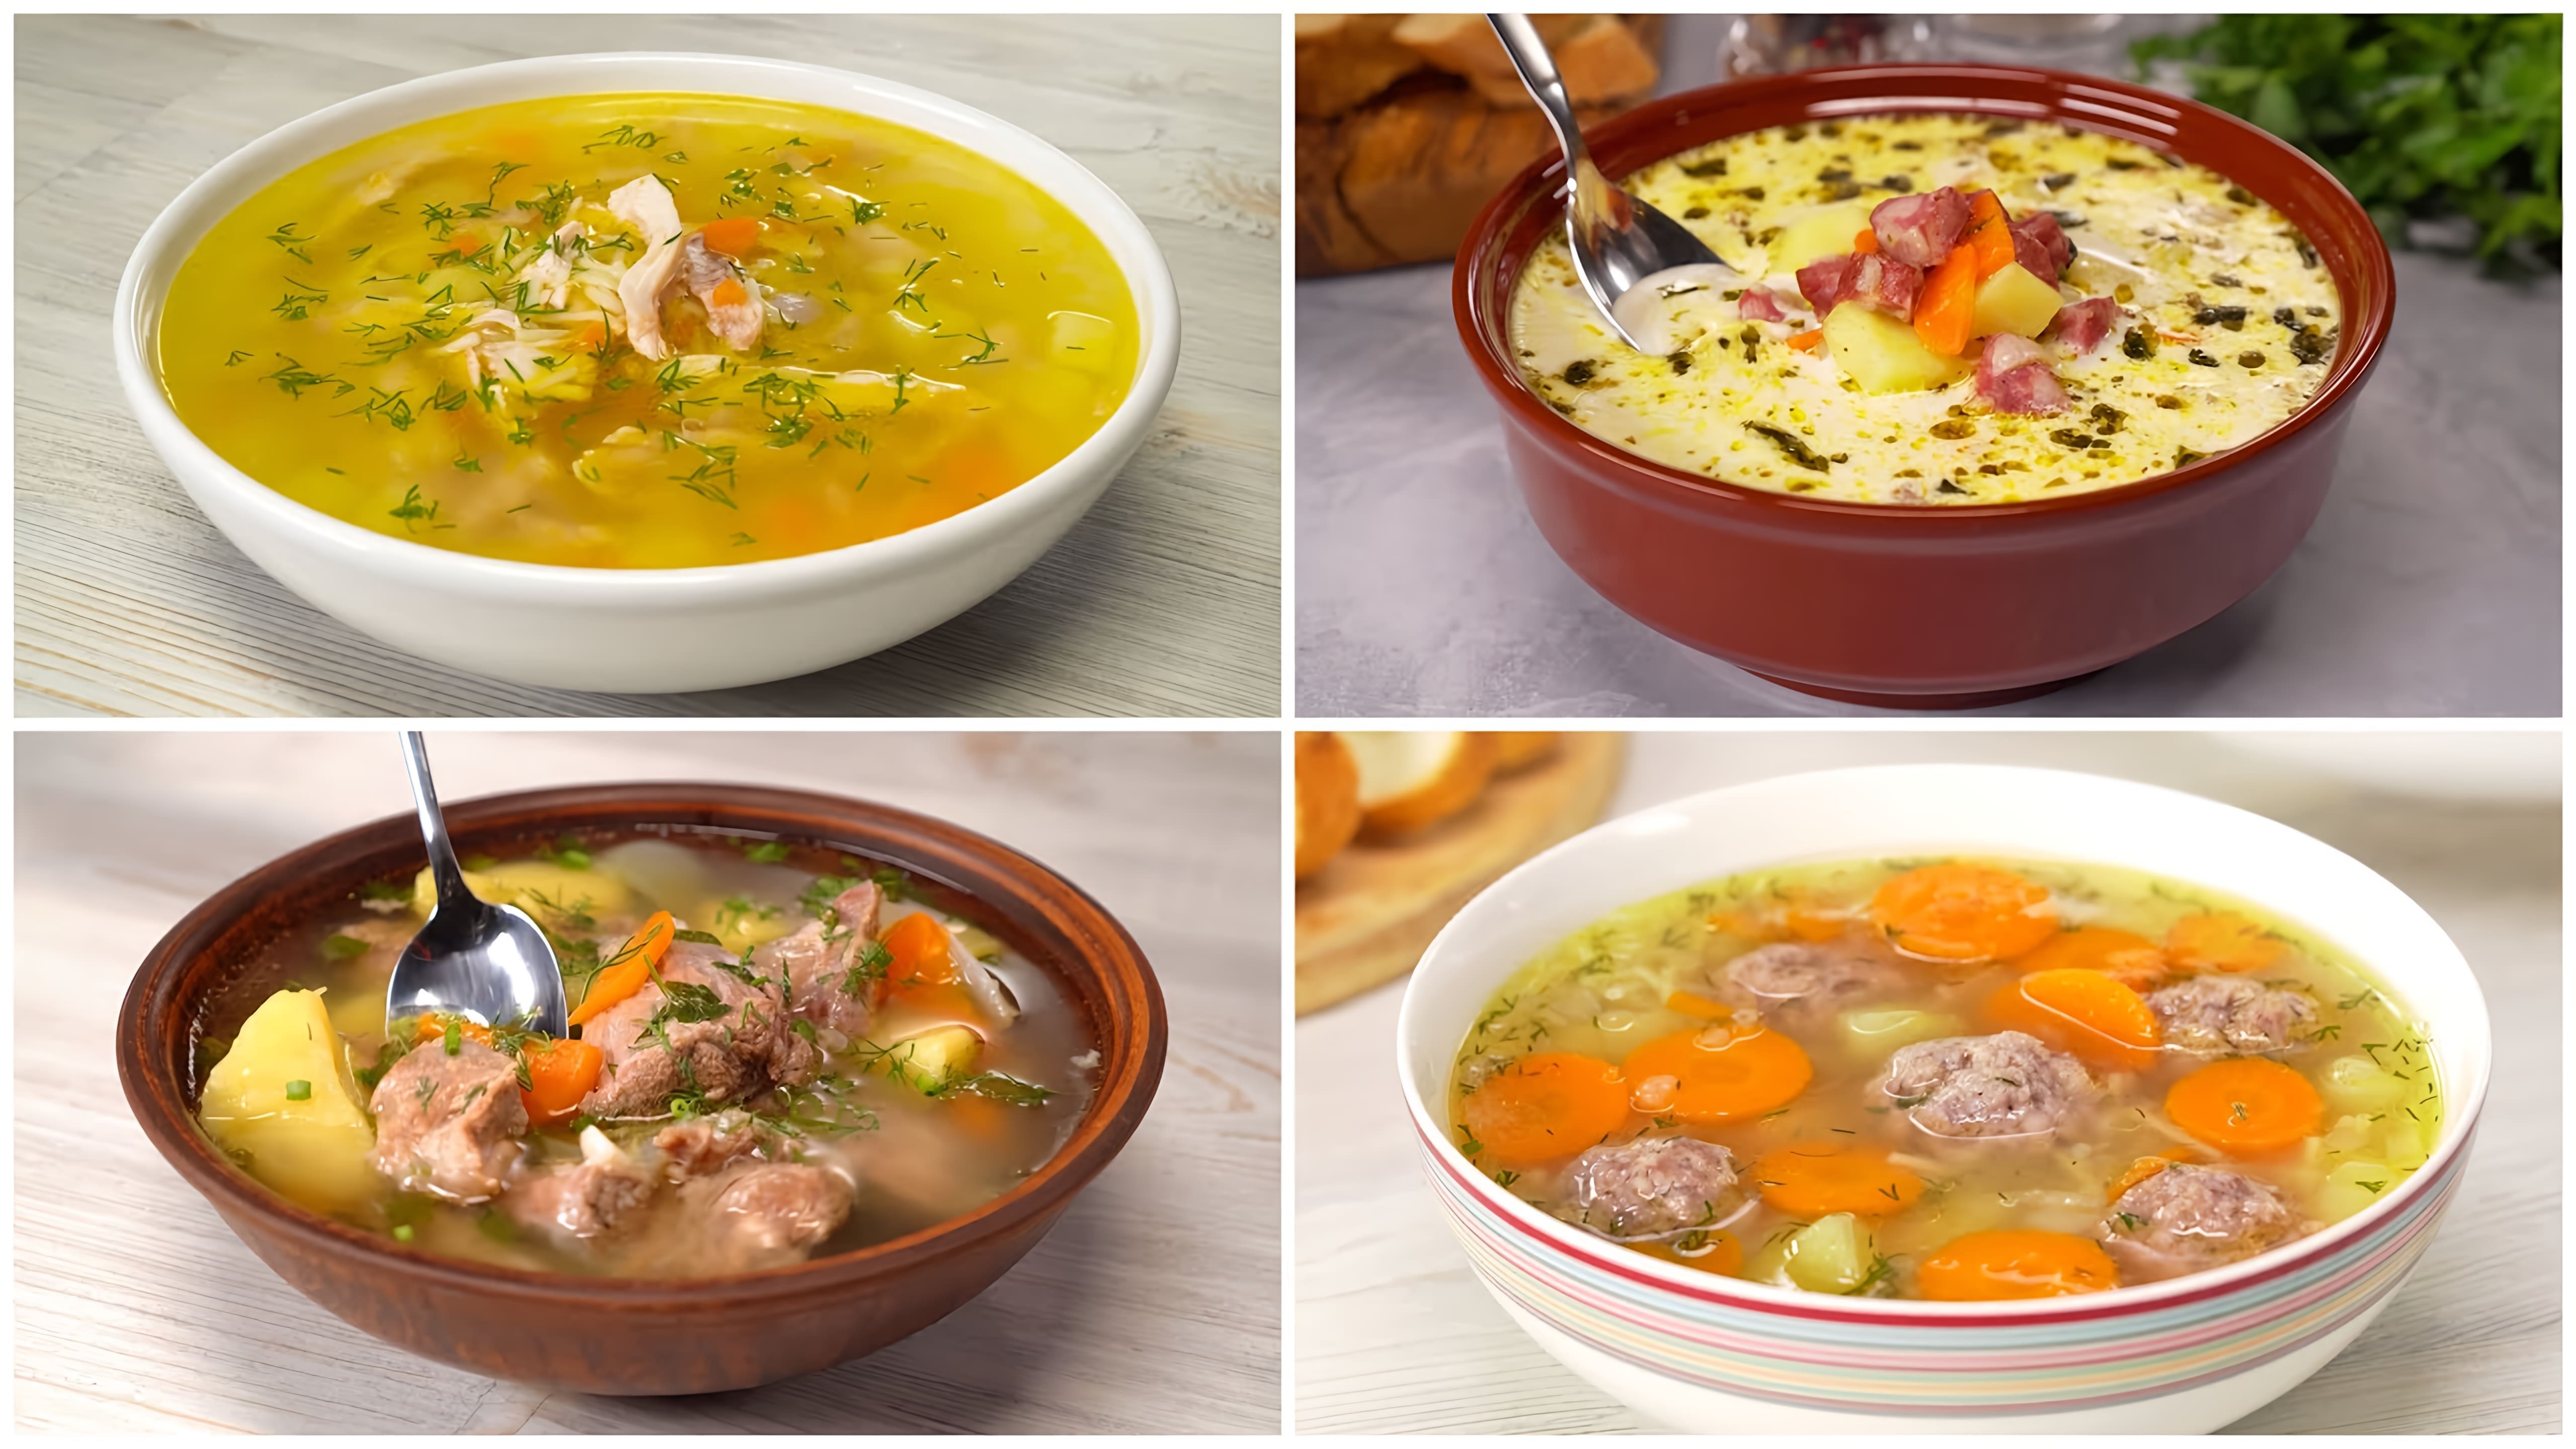 В данном видео демонстрируются 4 рецепта простых и вкусных супов от канала "Всегда Вкусно!"